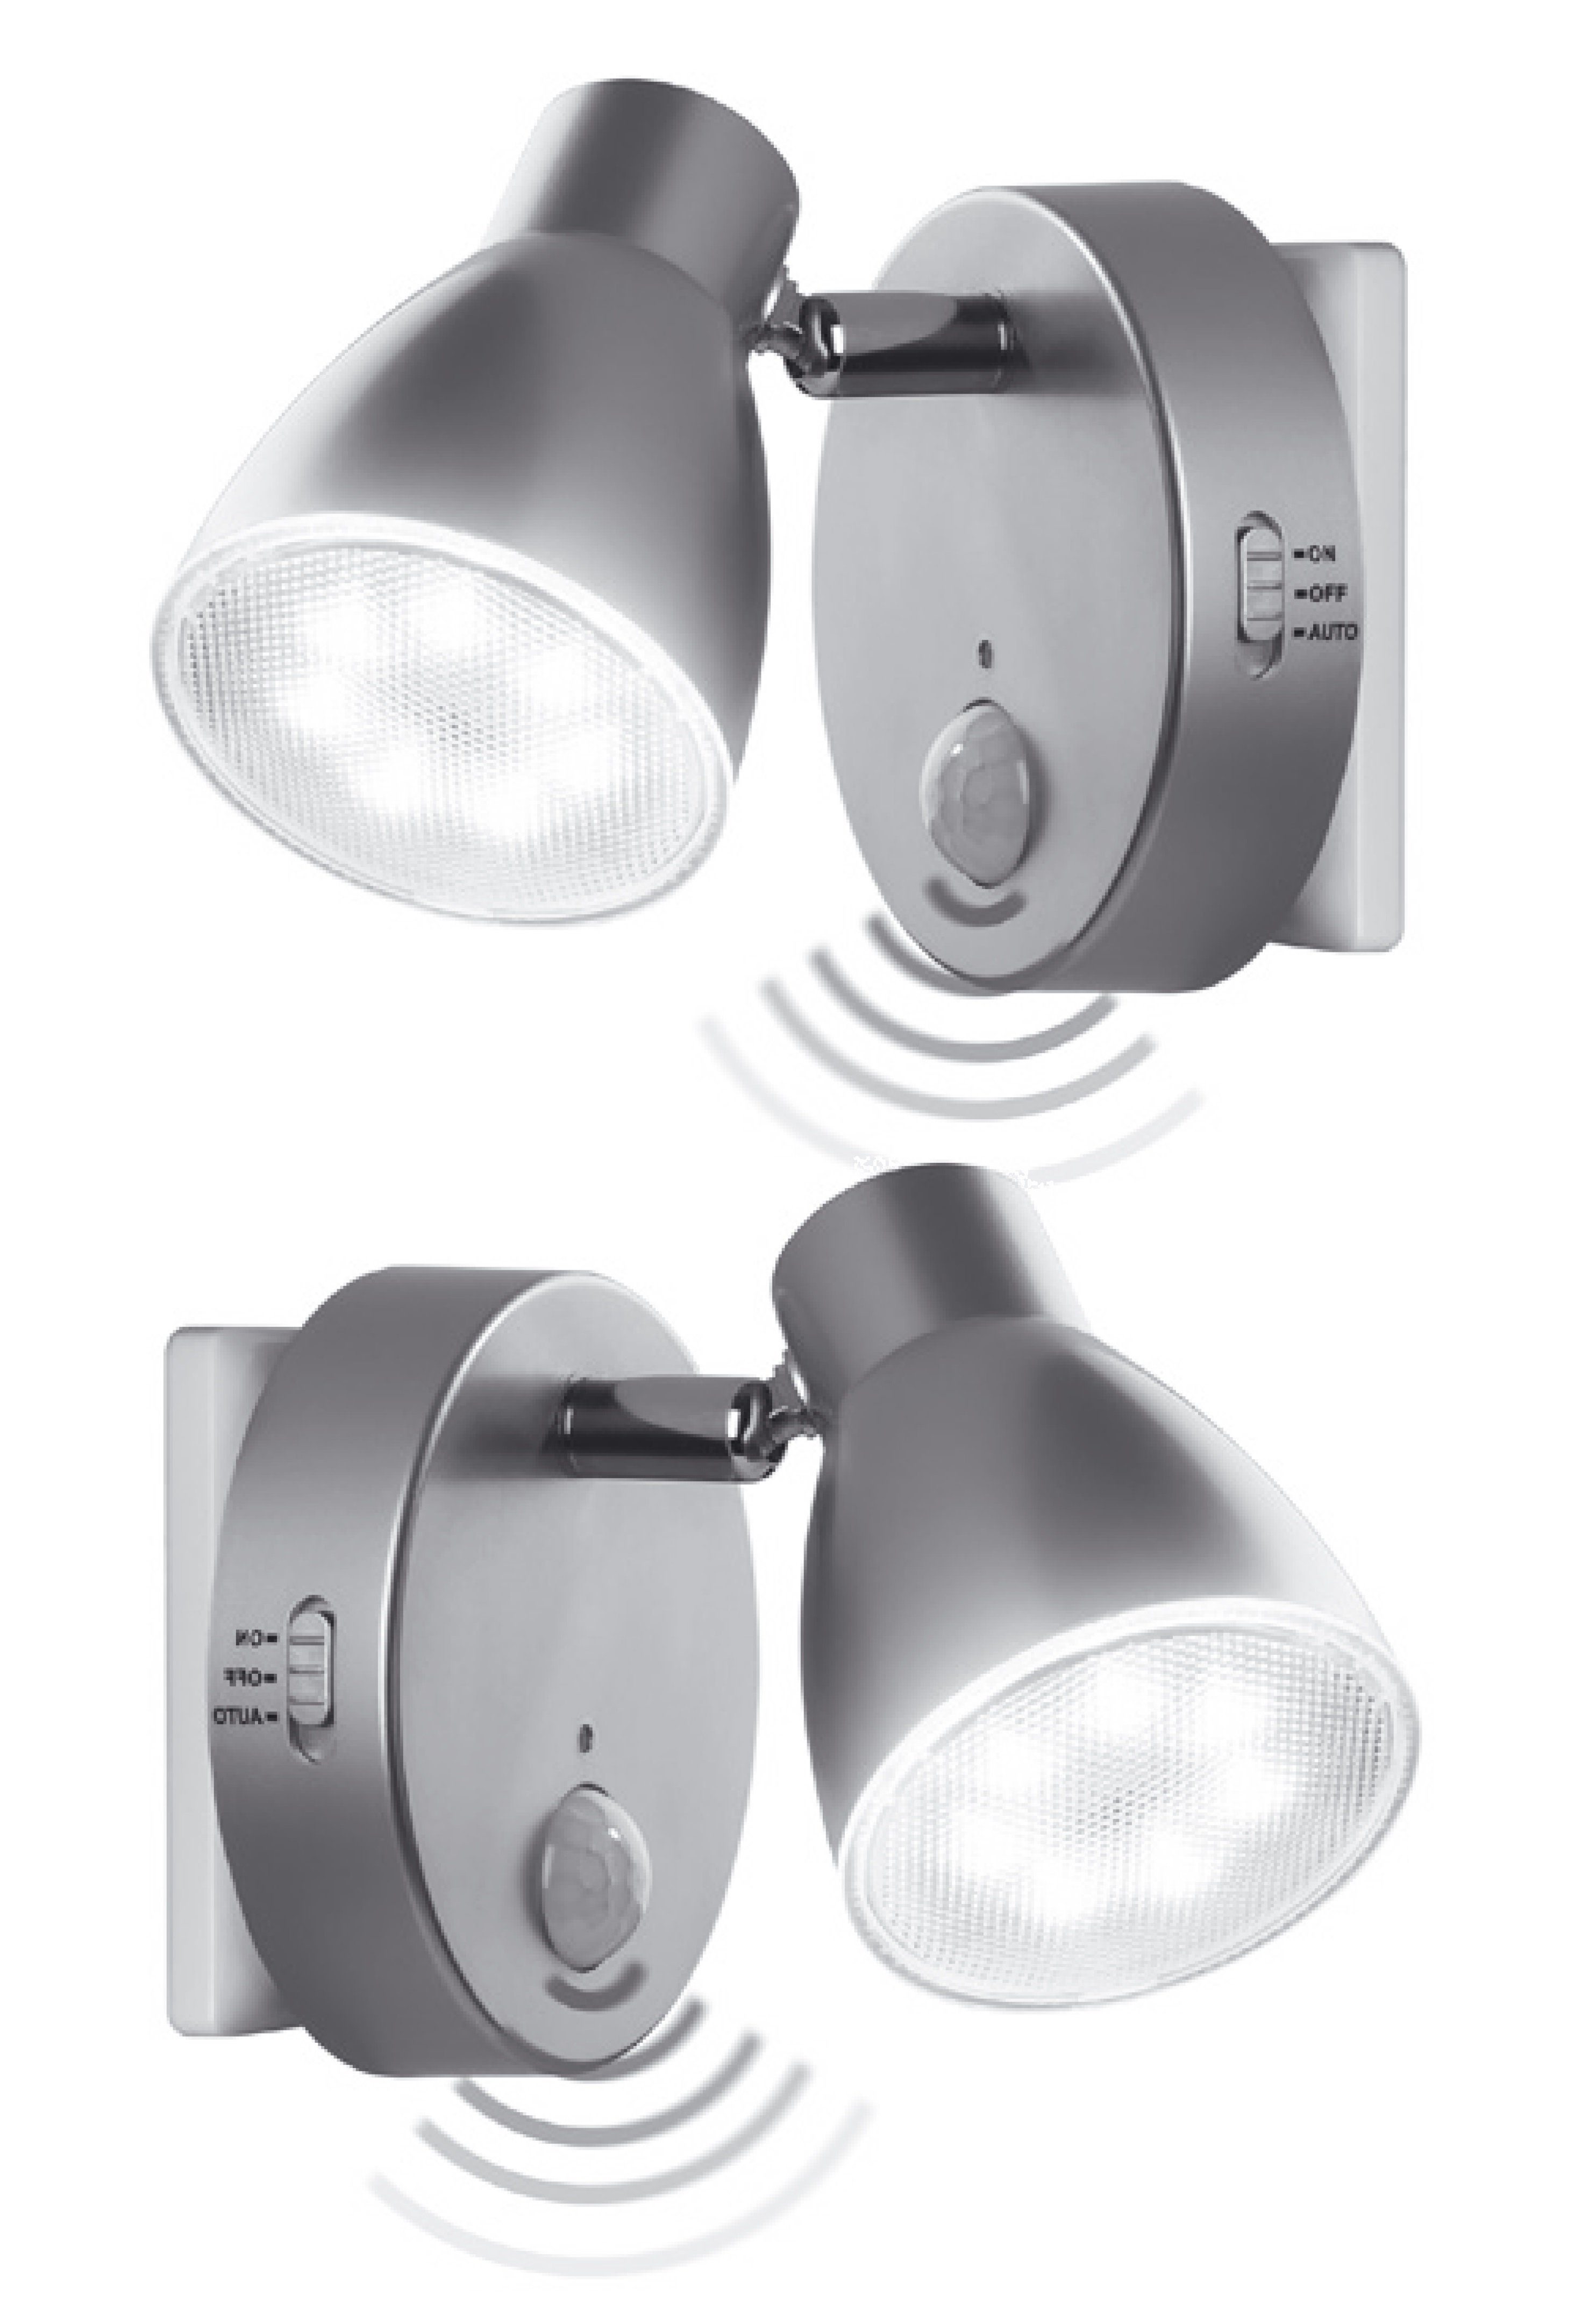 LED & Sicherheitslicht Sensor Set Steckdosenlicht Nachtlampe, 2635-024 mit LED Automatikfunktion Bewegungssensor in 230V Orientierungslicht, TRANGO Wandlampe, Steckdosenleuchte, 2er *MILO* Nachtlicht Steckdosenlampe, Silber